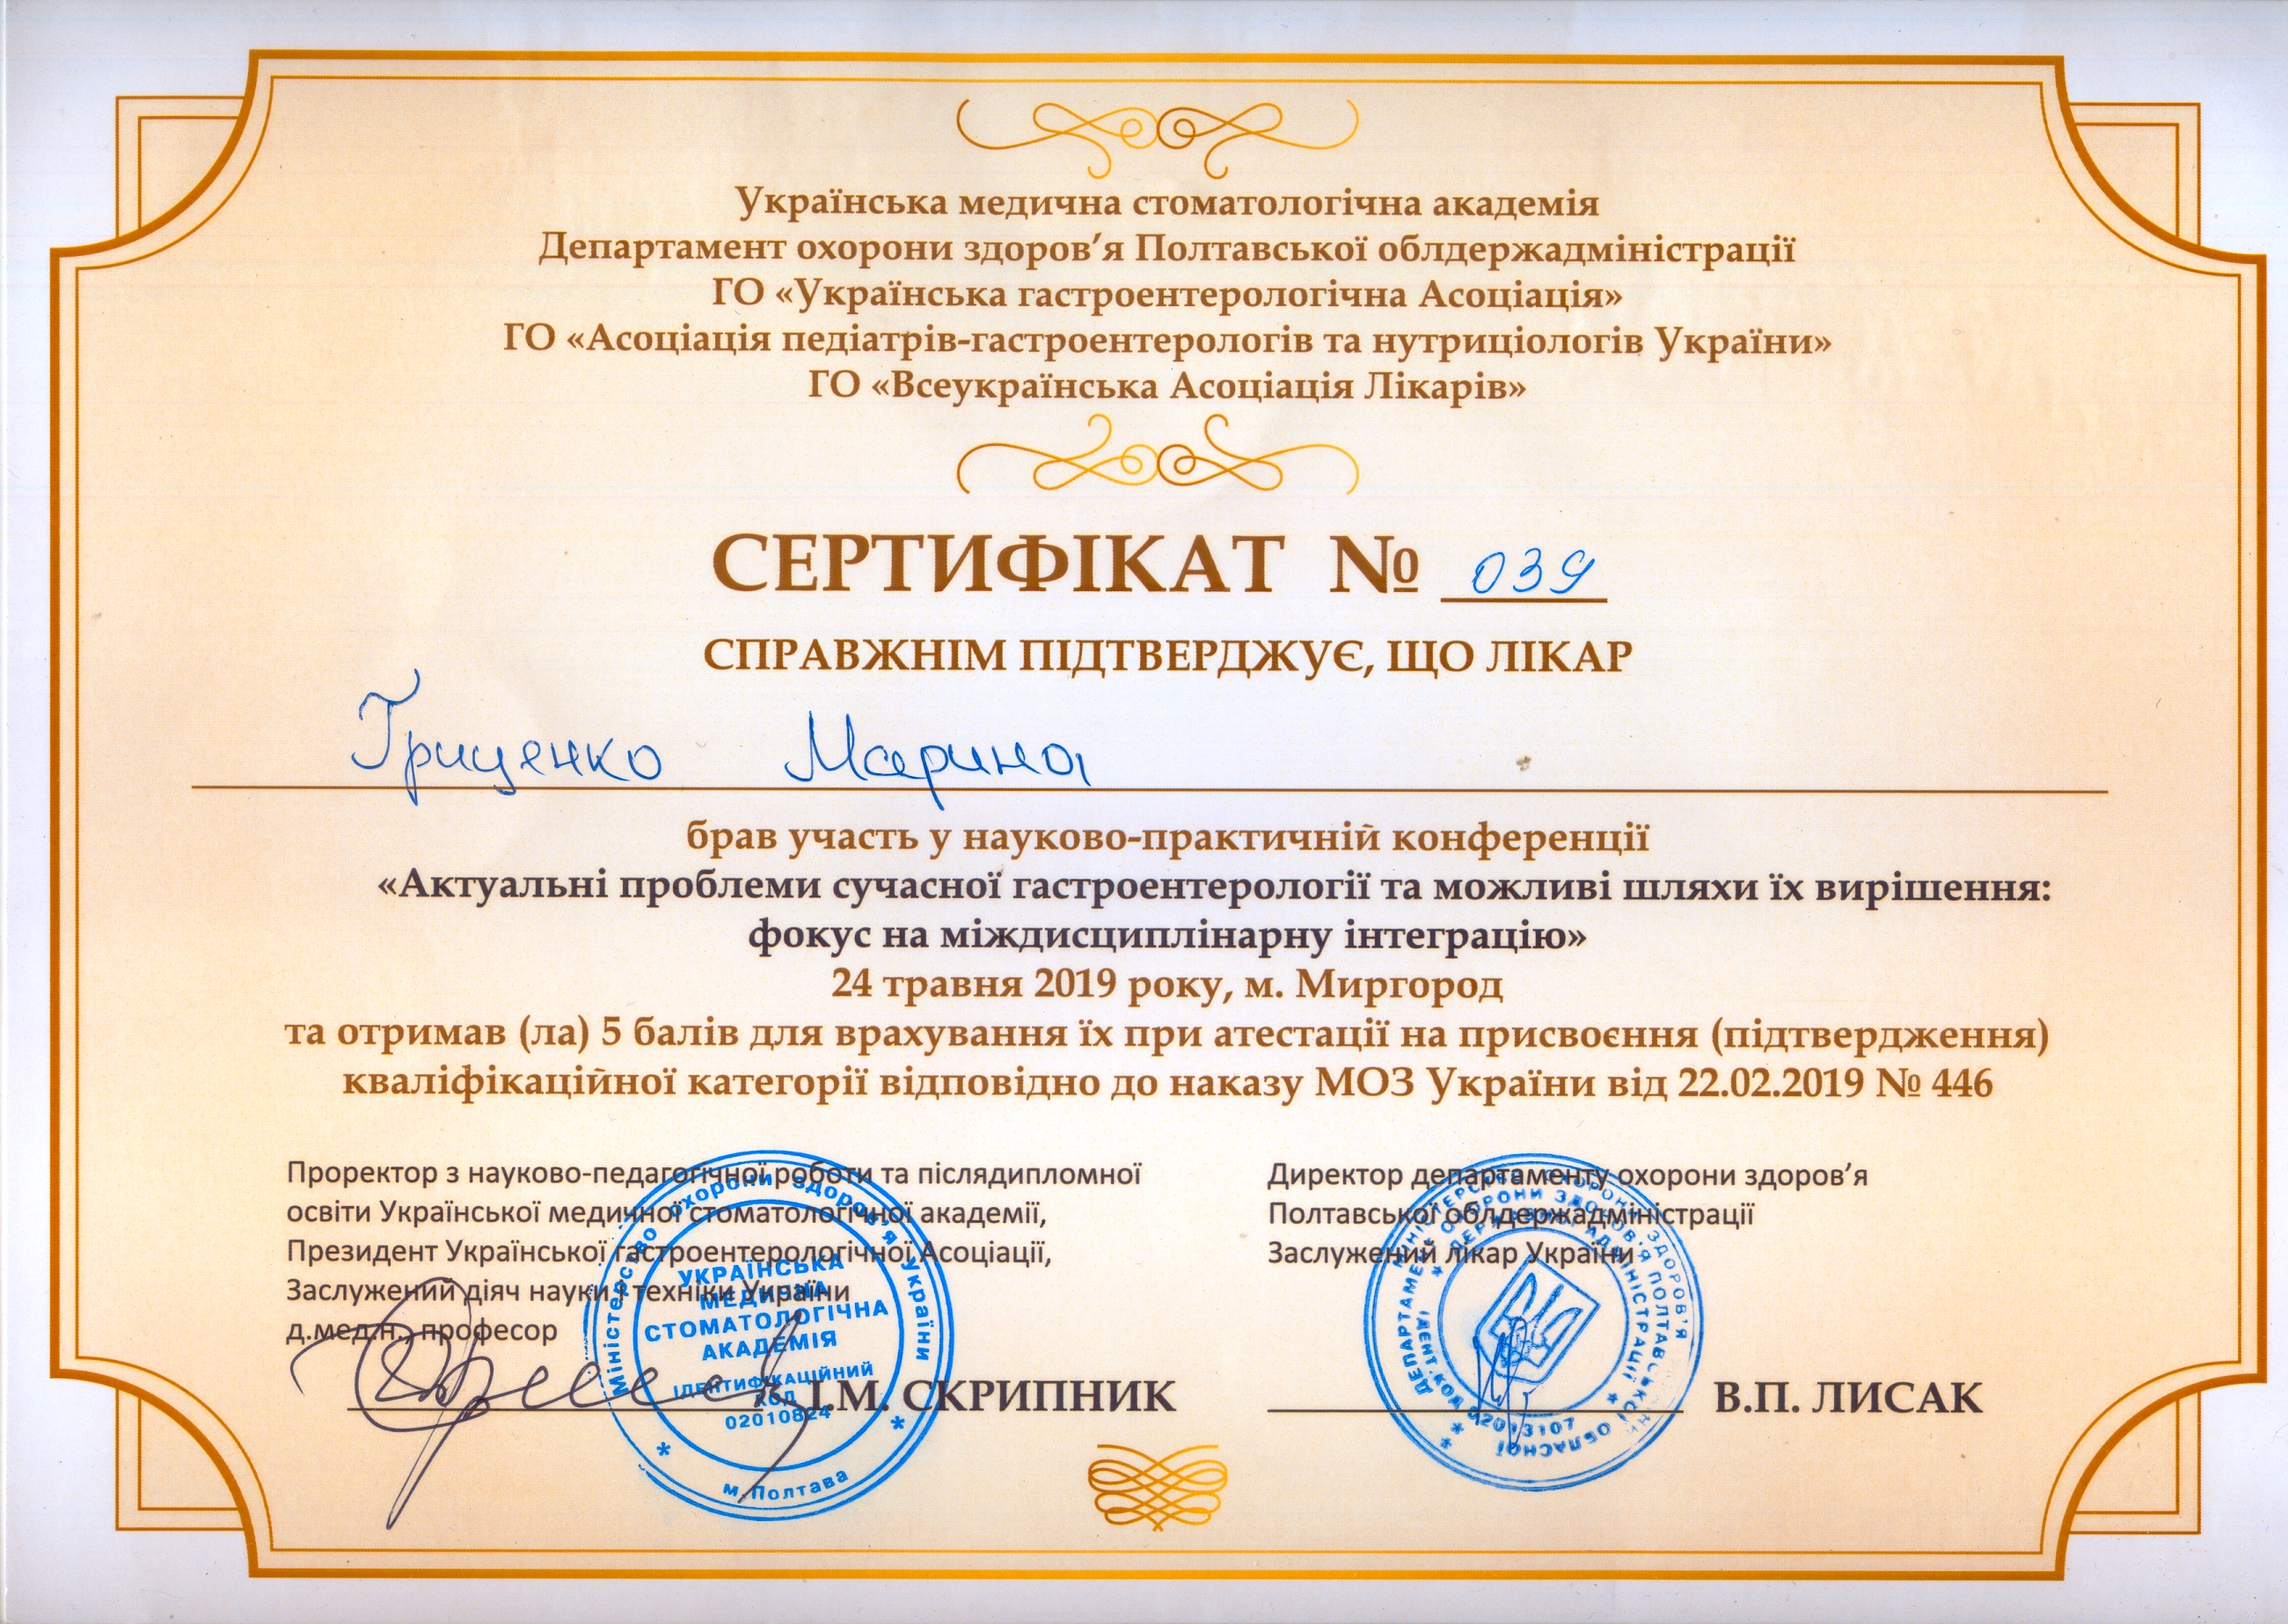 Сертифiкат Гриценко №039